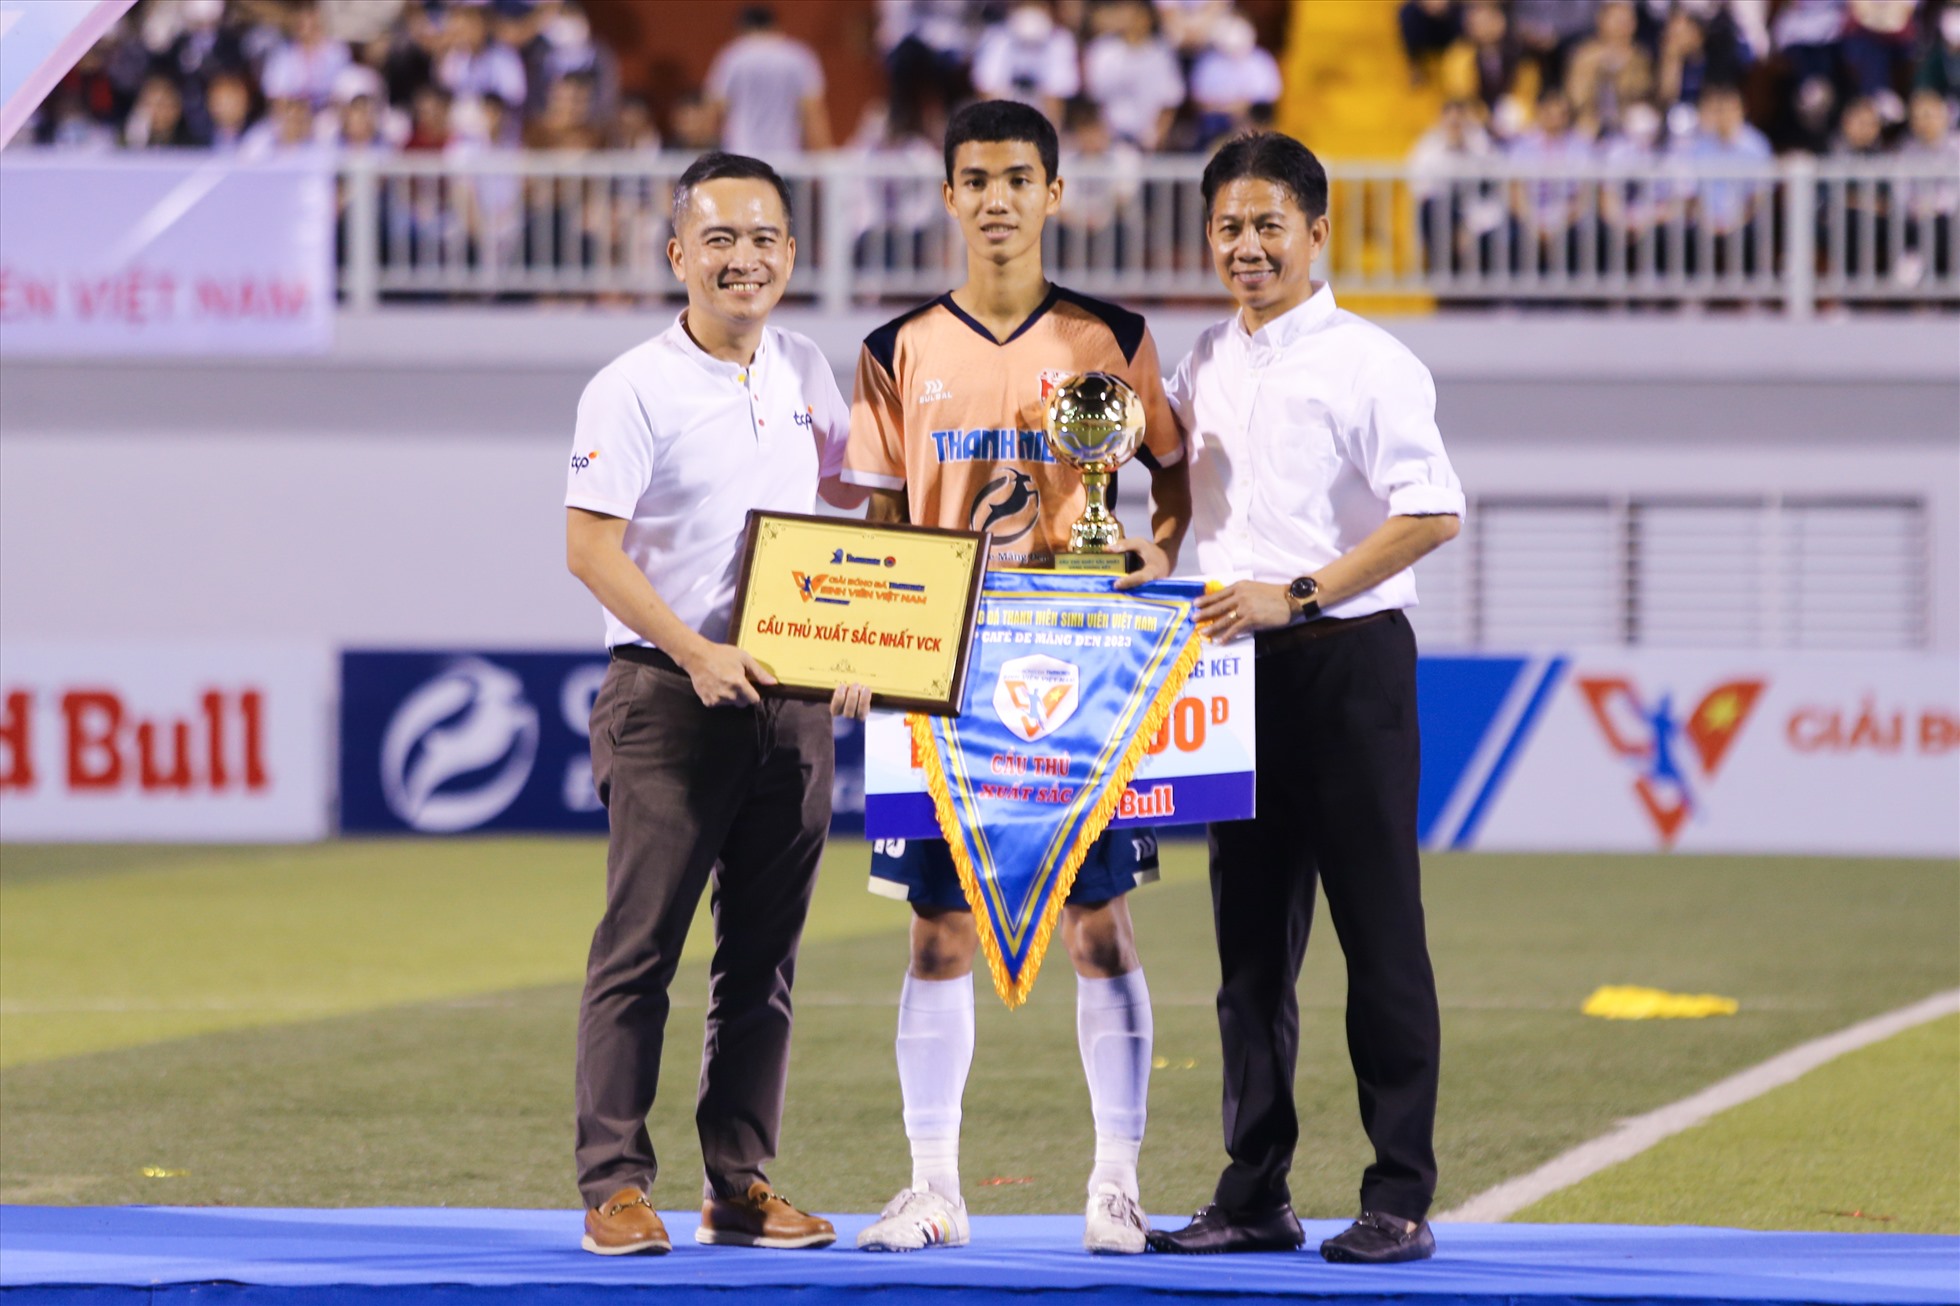 Đến dự trận chung kết còn có tiền đạo đội tuyển Việt Nam - Nguyễn Tiến Linh và huấn luyện viên trưởng U20 Việt Nam - ông Hoàng Anh Tuấn.